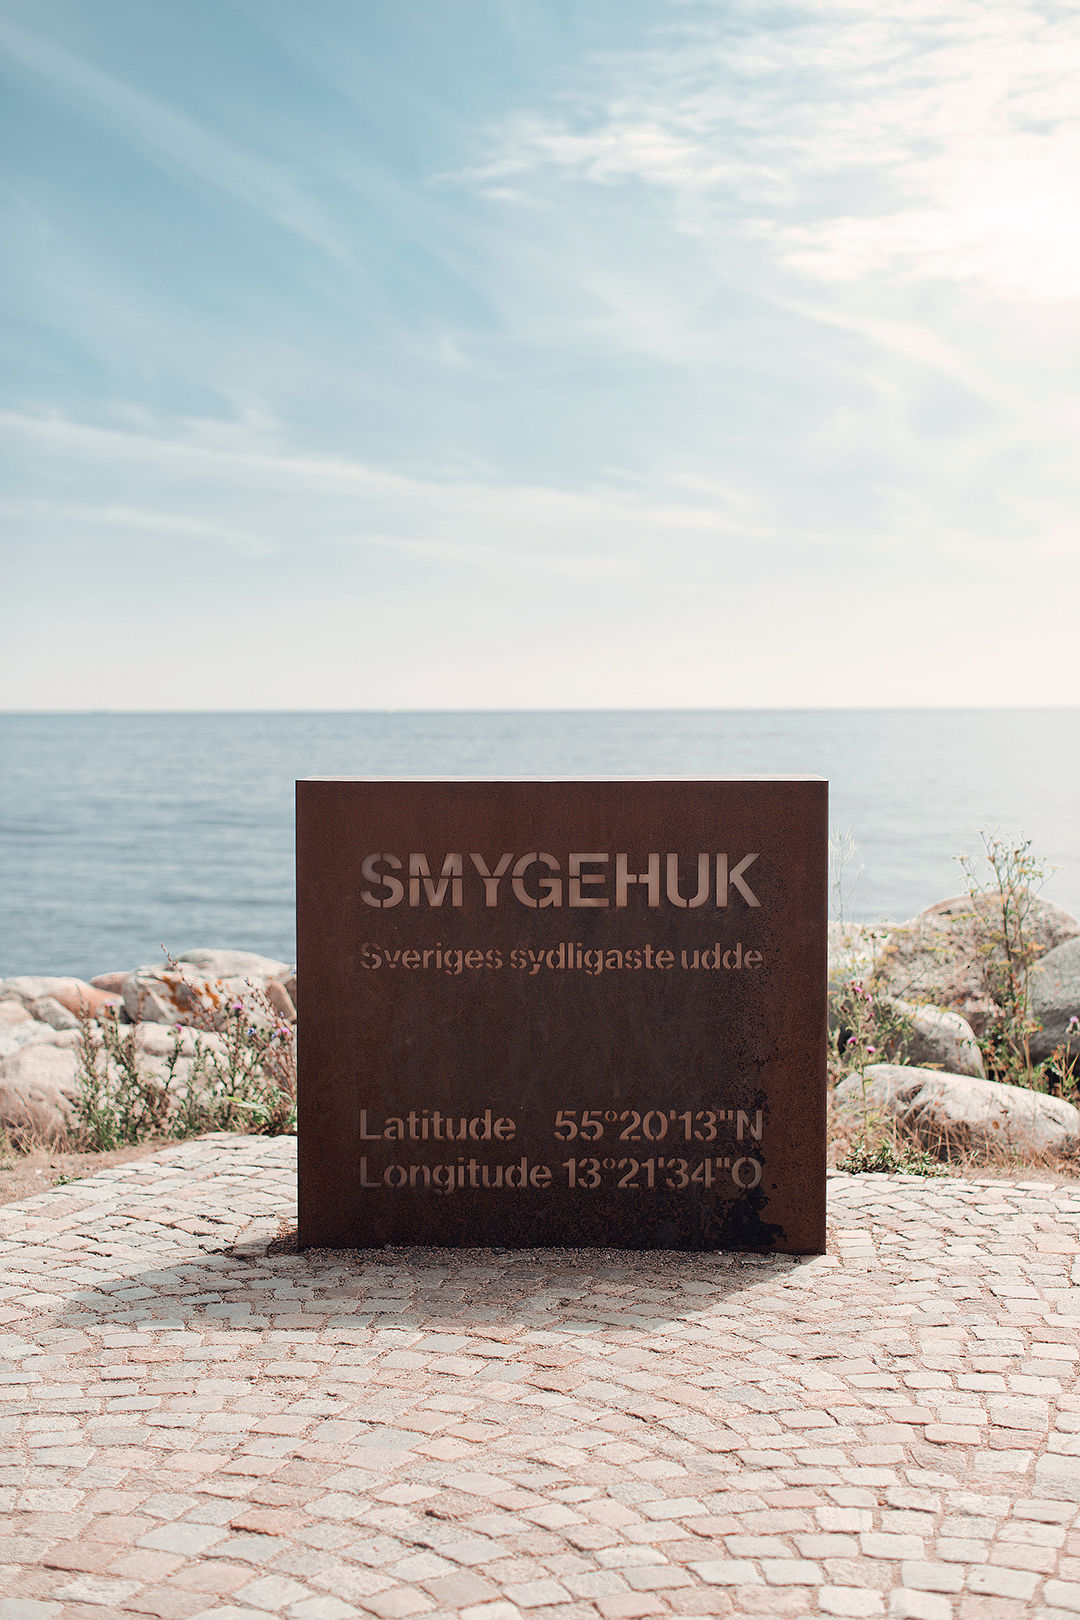 Smygehuk - Sveriges sydligaste udde